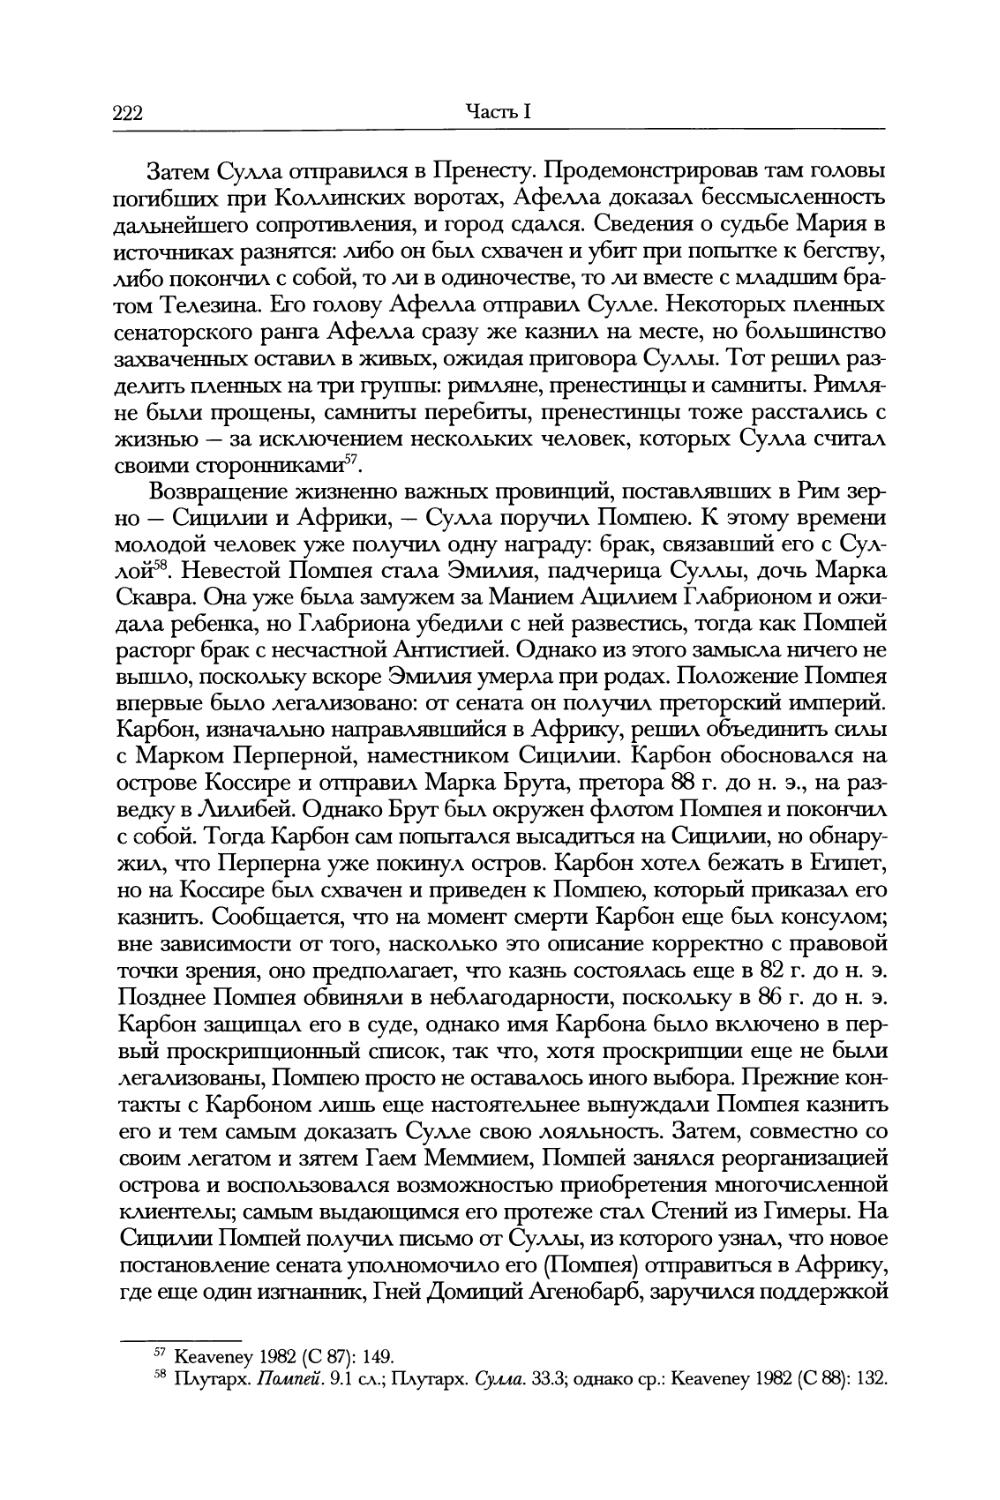 IV. Диктатура Суллы и ее последствия, 82—78 гг. до н. э.